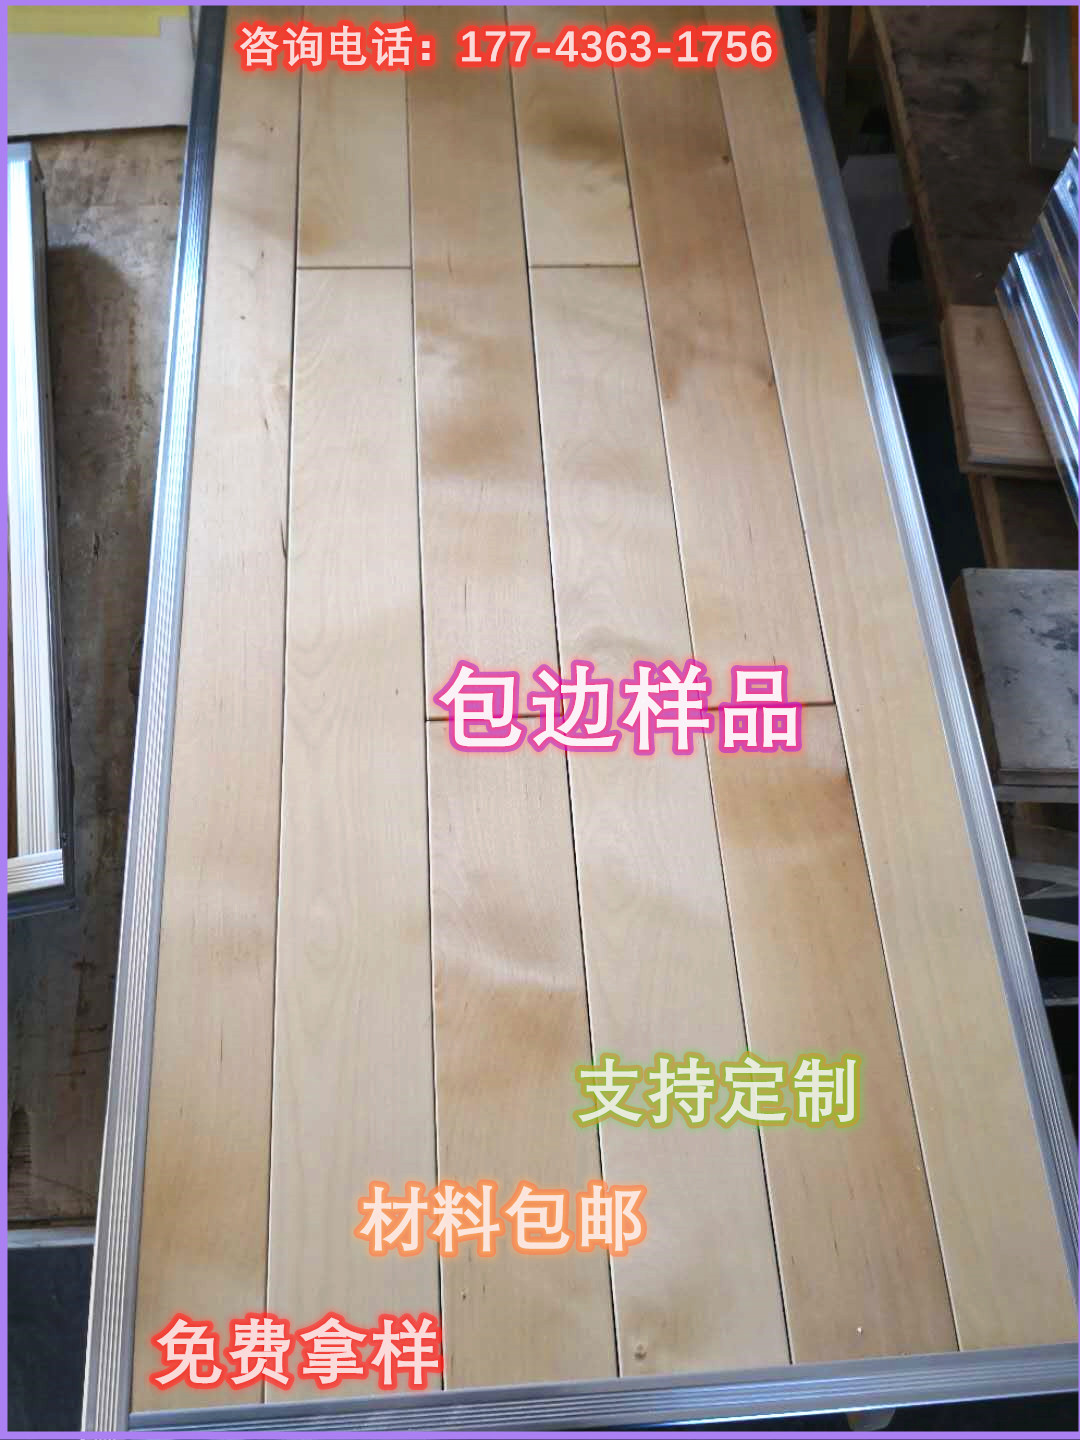 宇跃木地板篮球馆瑜伽馆乒乓球木地板实木地板